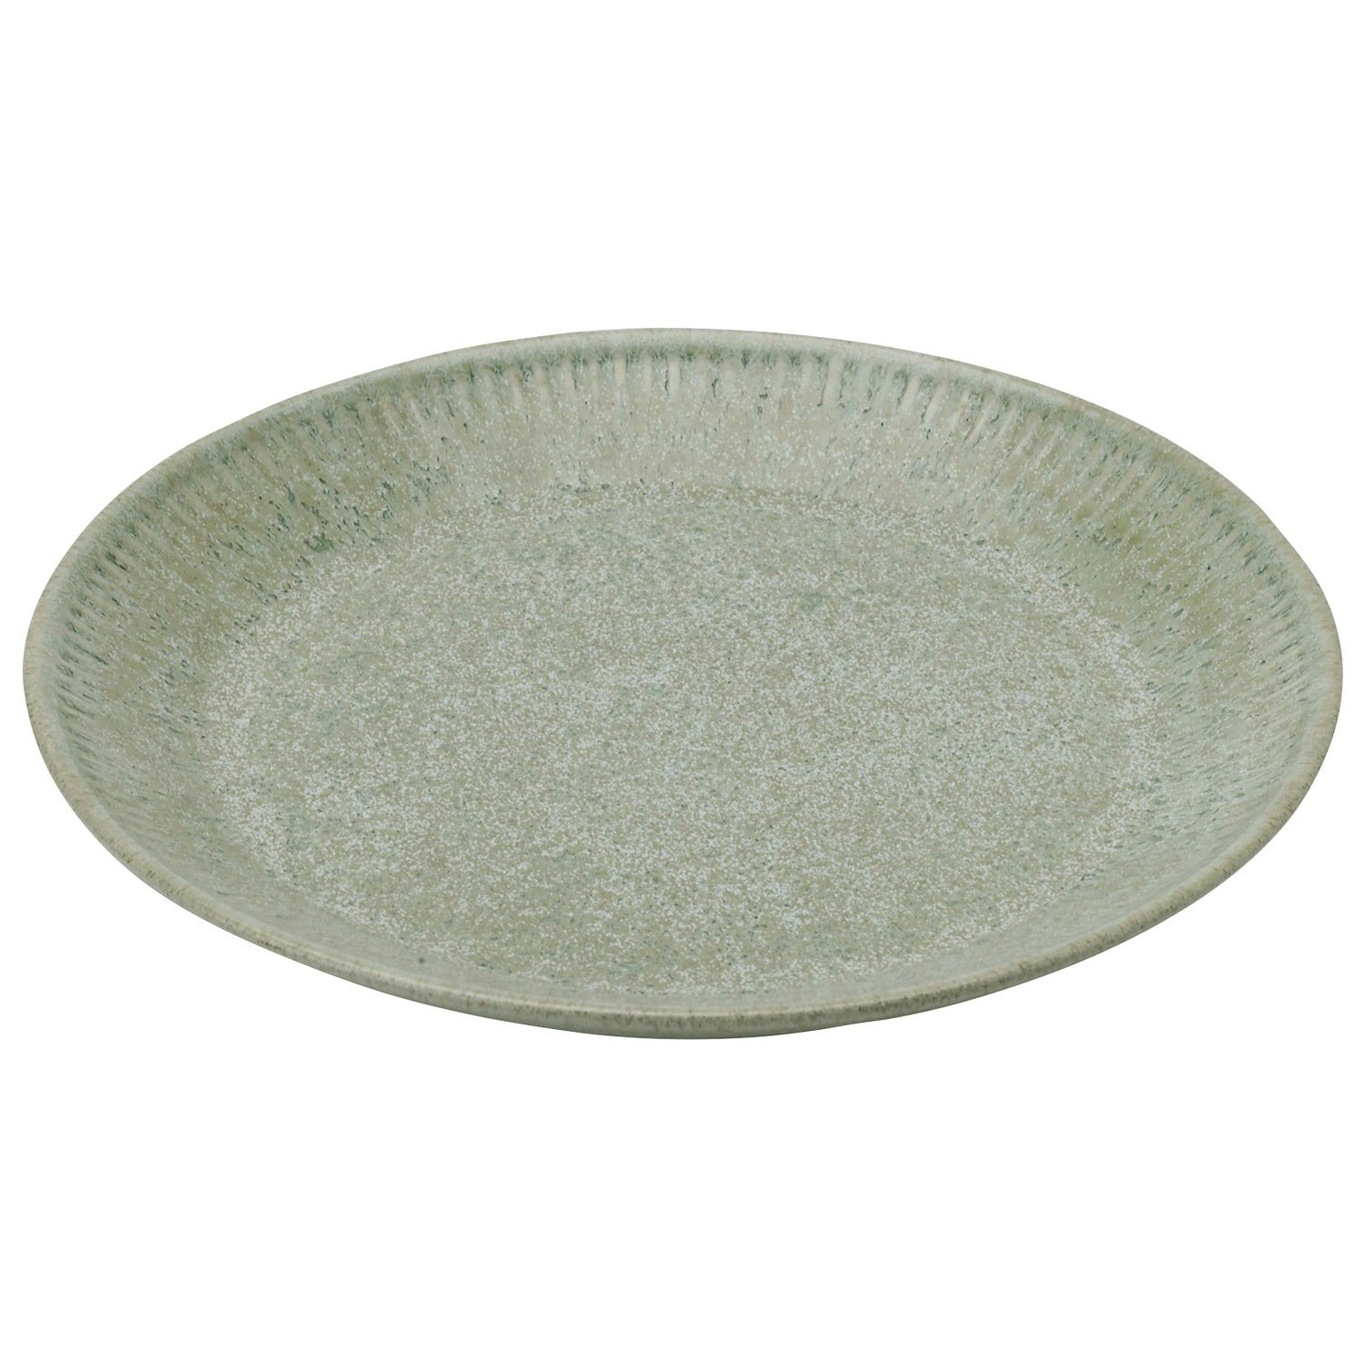 Knabstrup Side Plate 19 cm, Olive